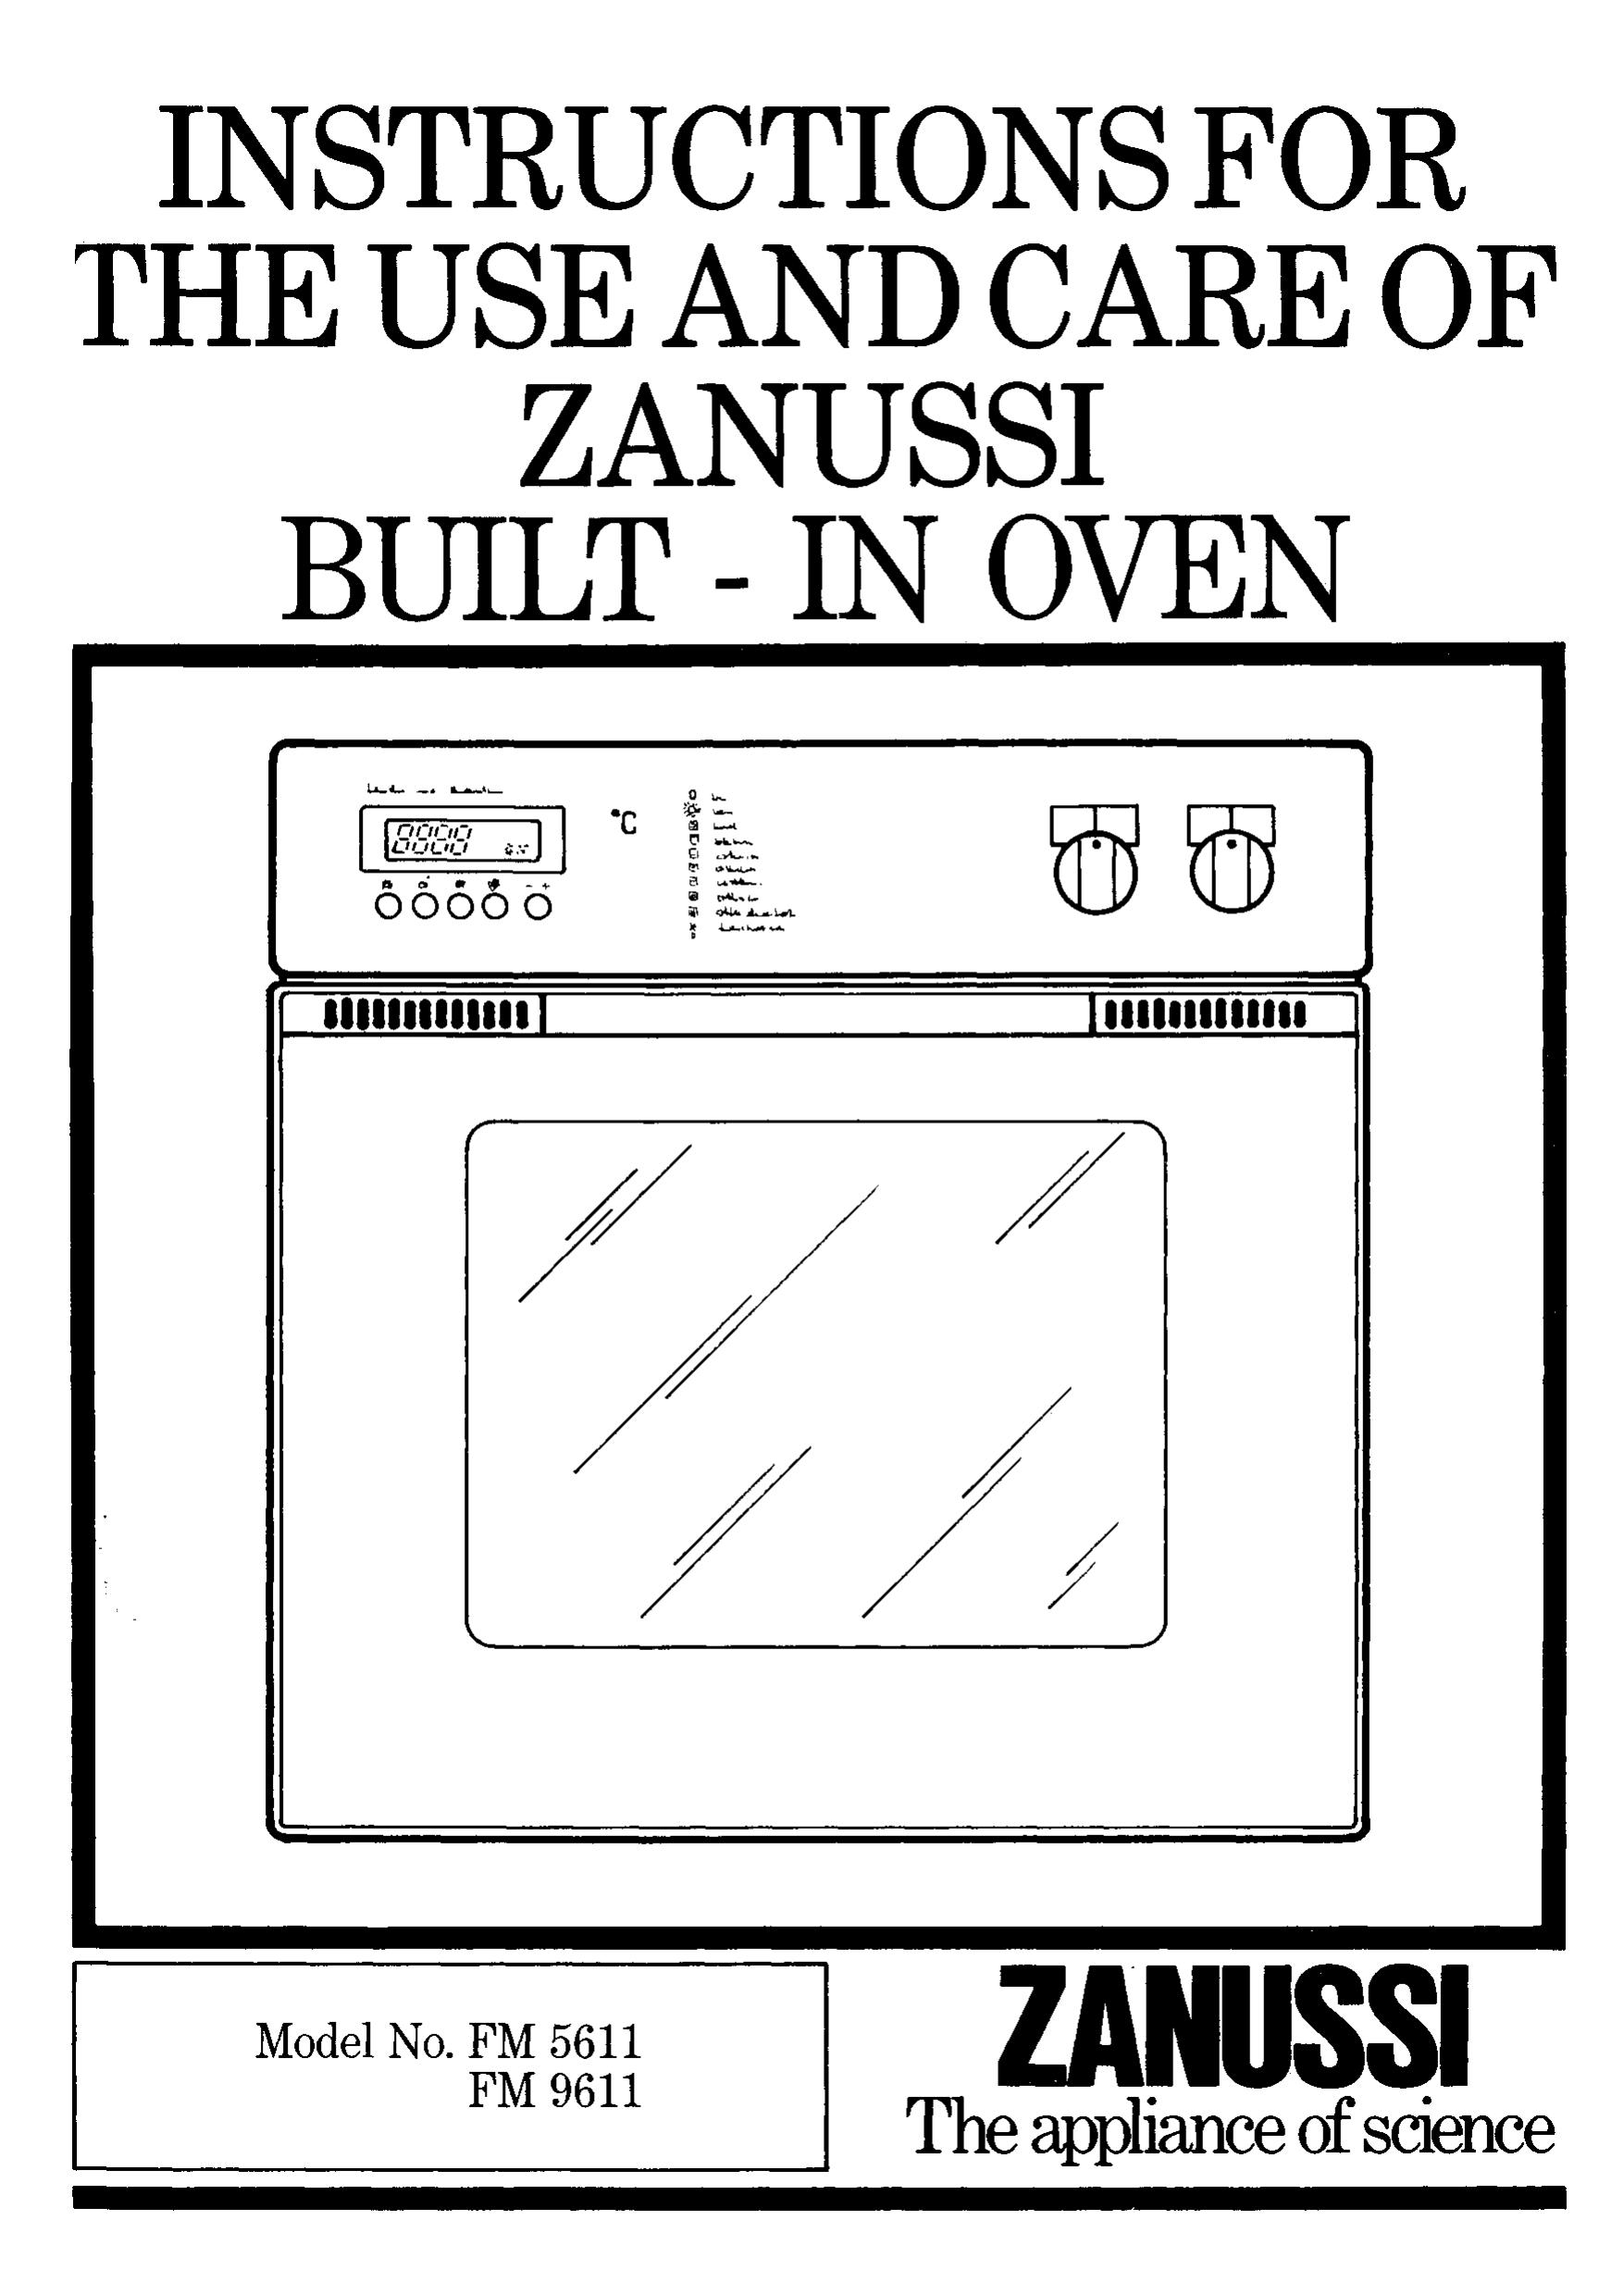 Zanussi fm 9611 Range User Manual